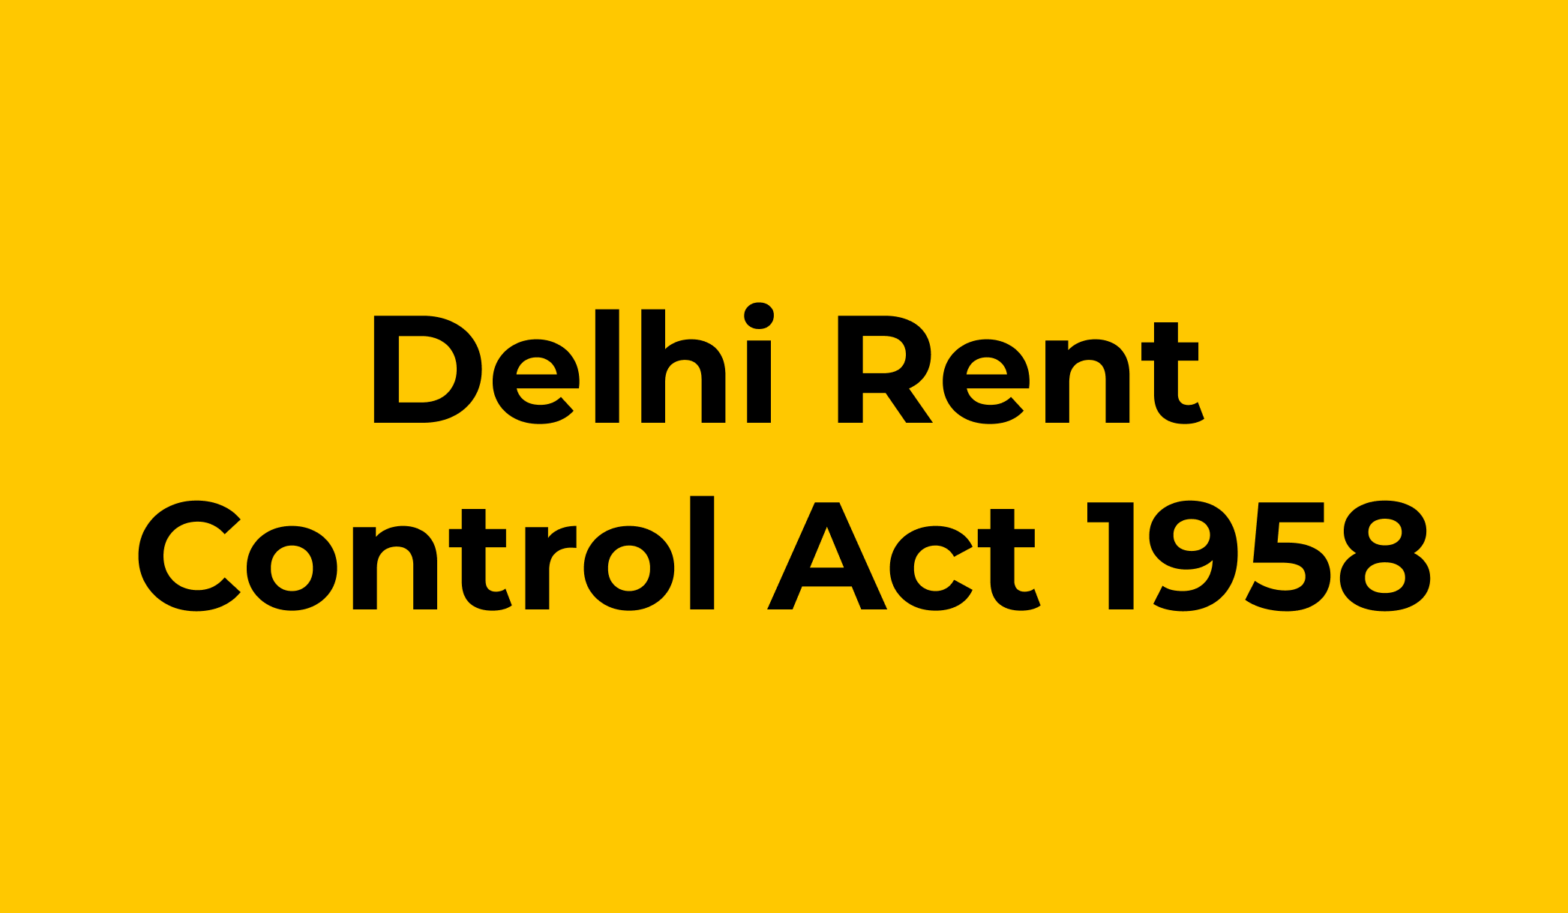 Delhi rent control act